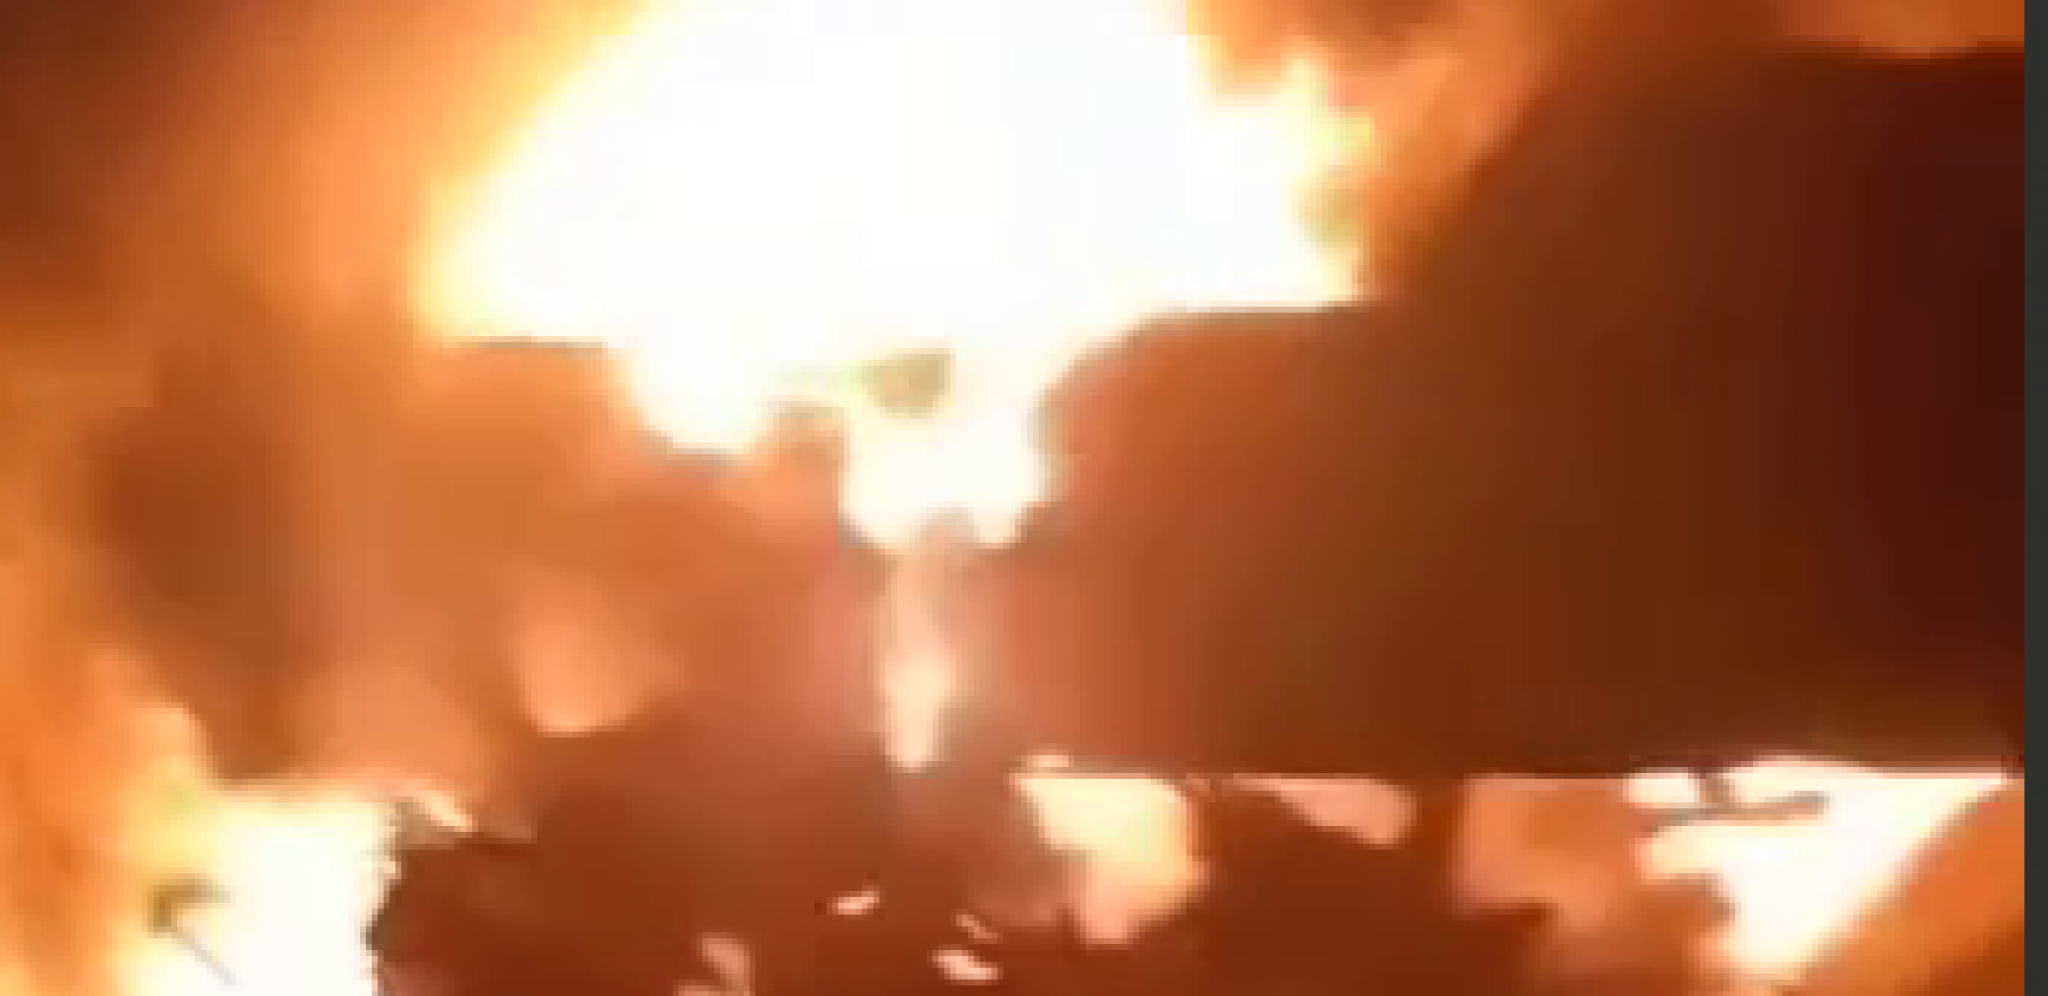 SNIMCI SUDARA U GRČKOJ! Užasavajući prizor: Vatra guta sve pred sobom nakon nesreće (VIDEO)